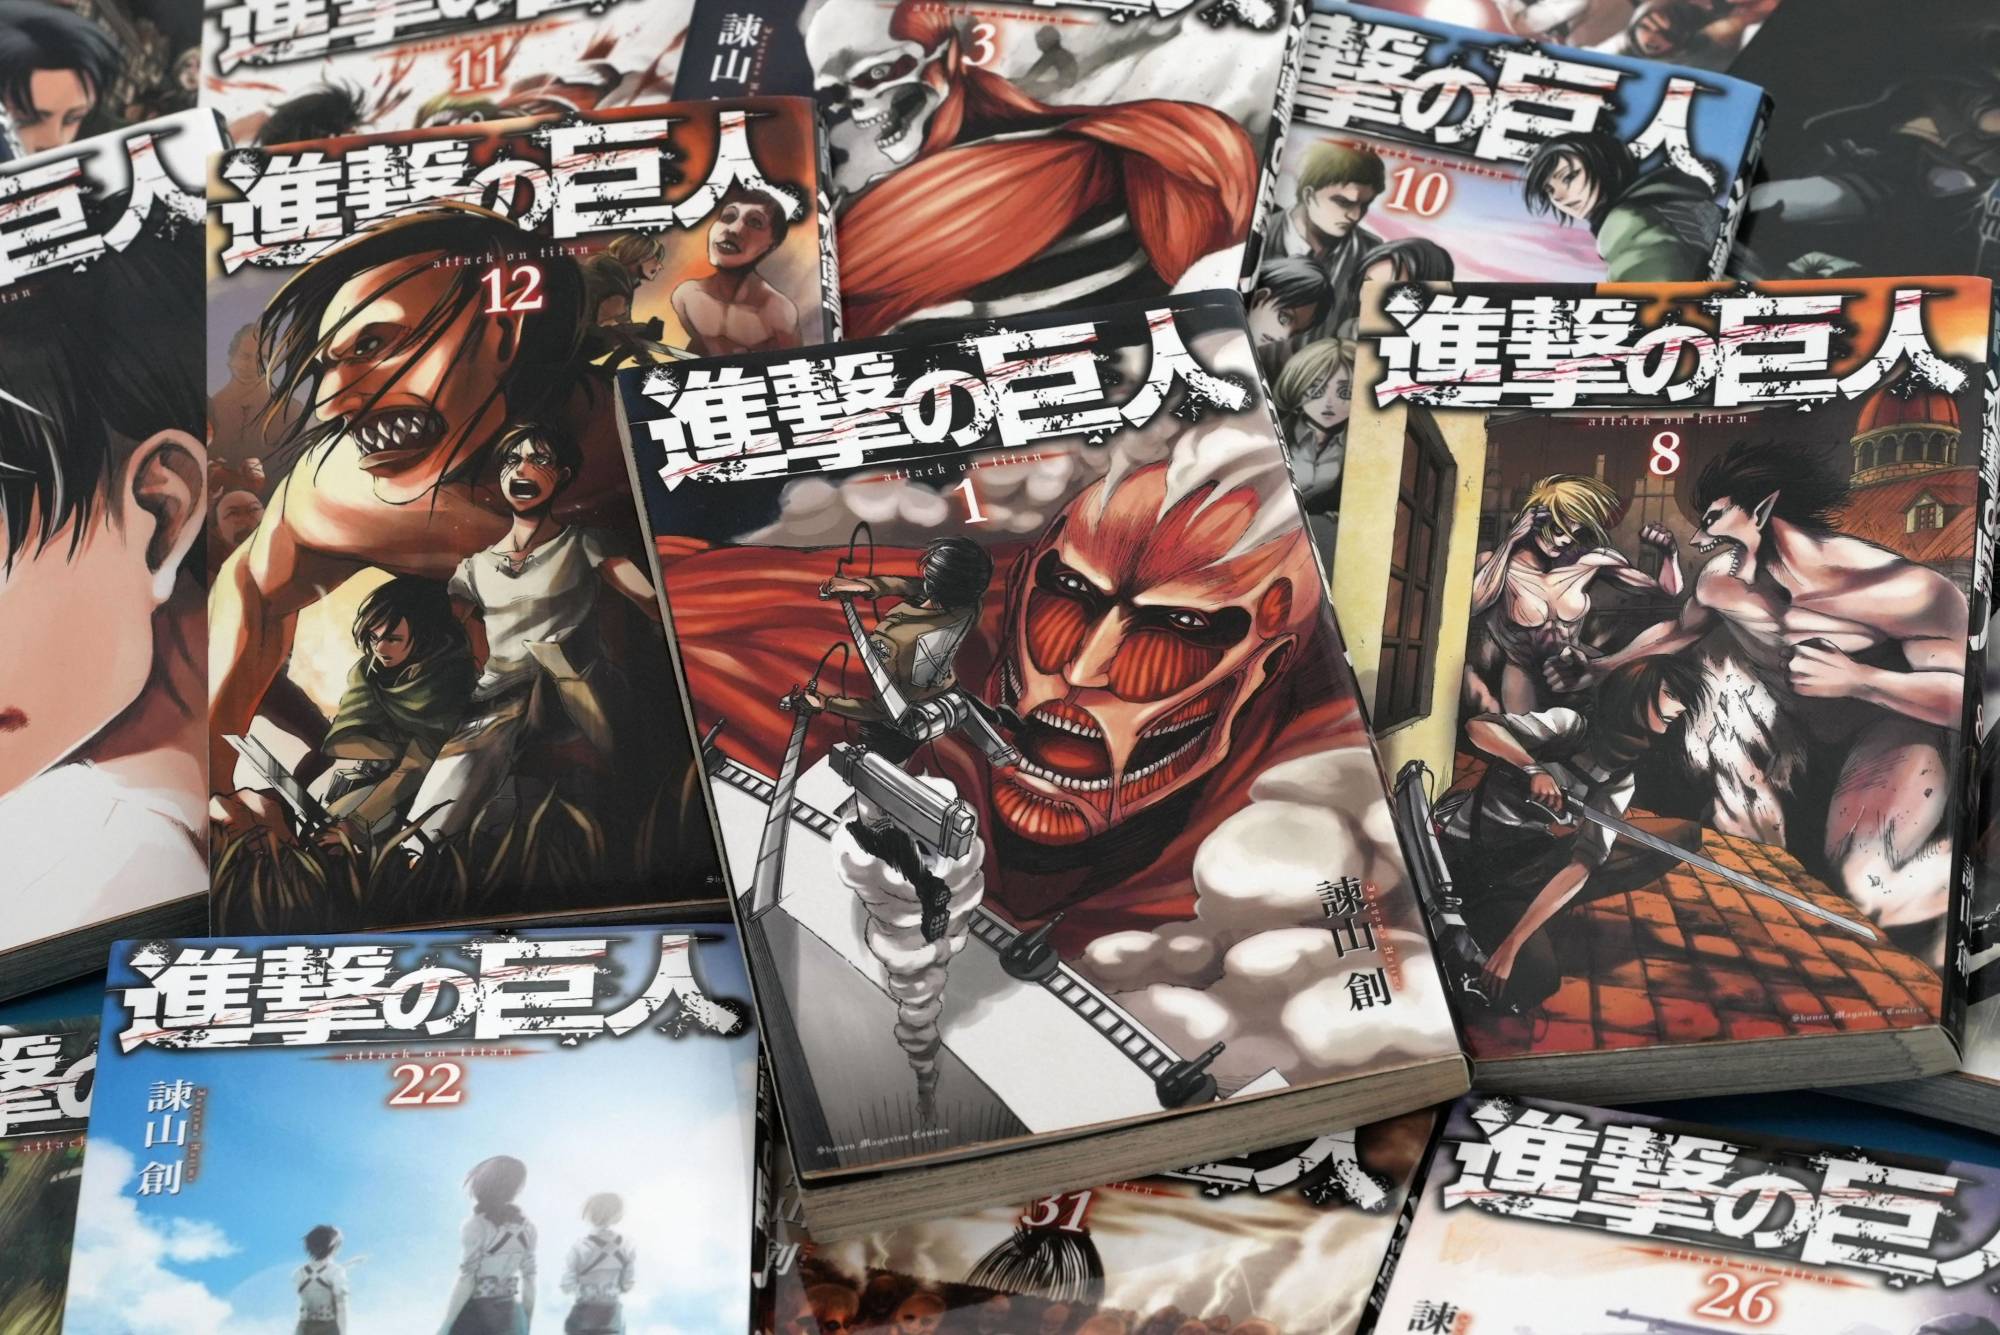 Attack on Titan - Latest News, Updates on Attack on Titan Manga